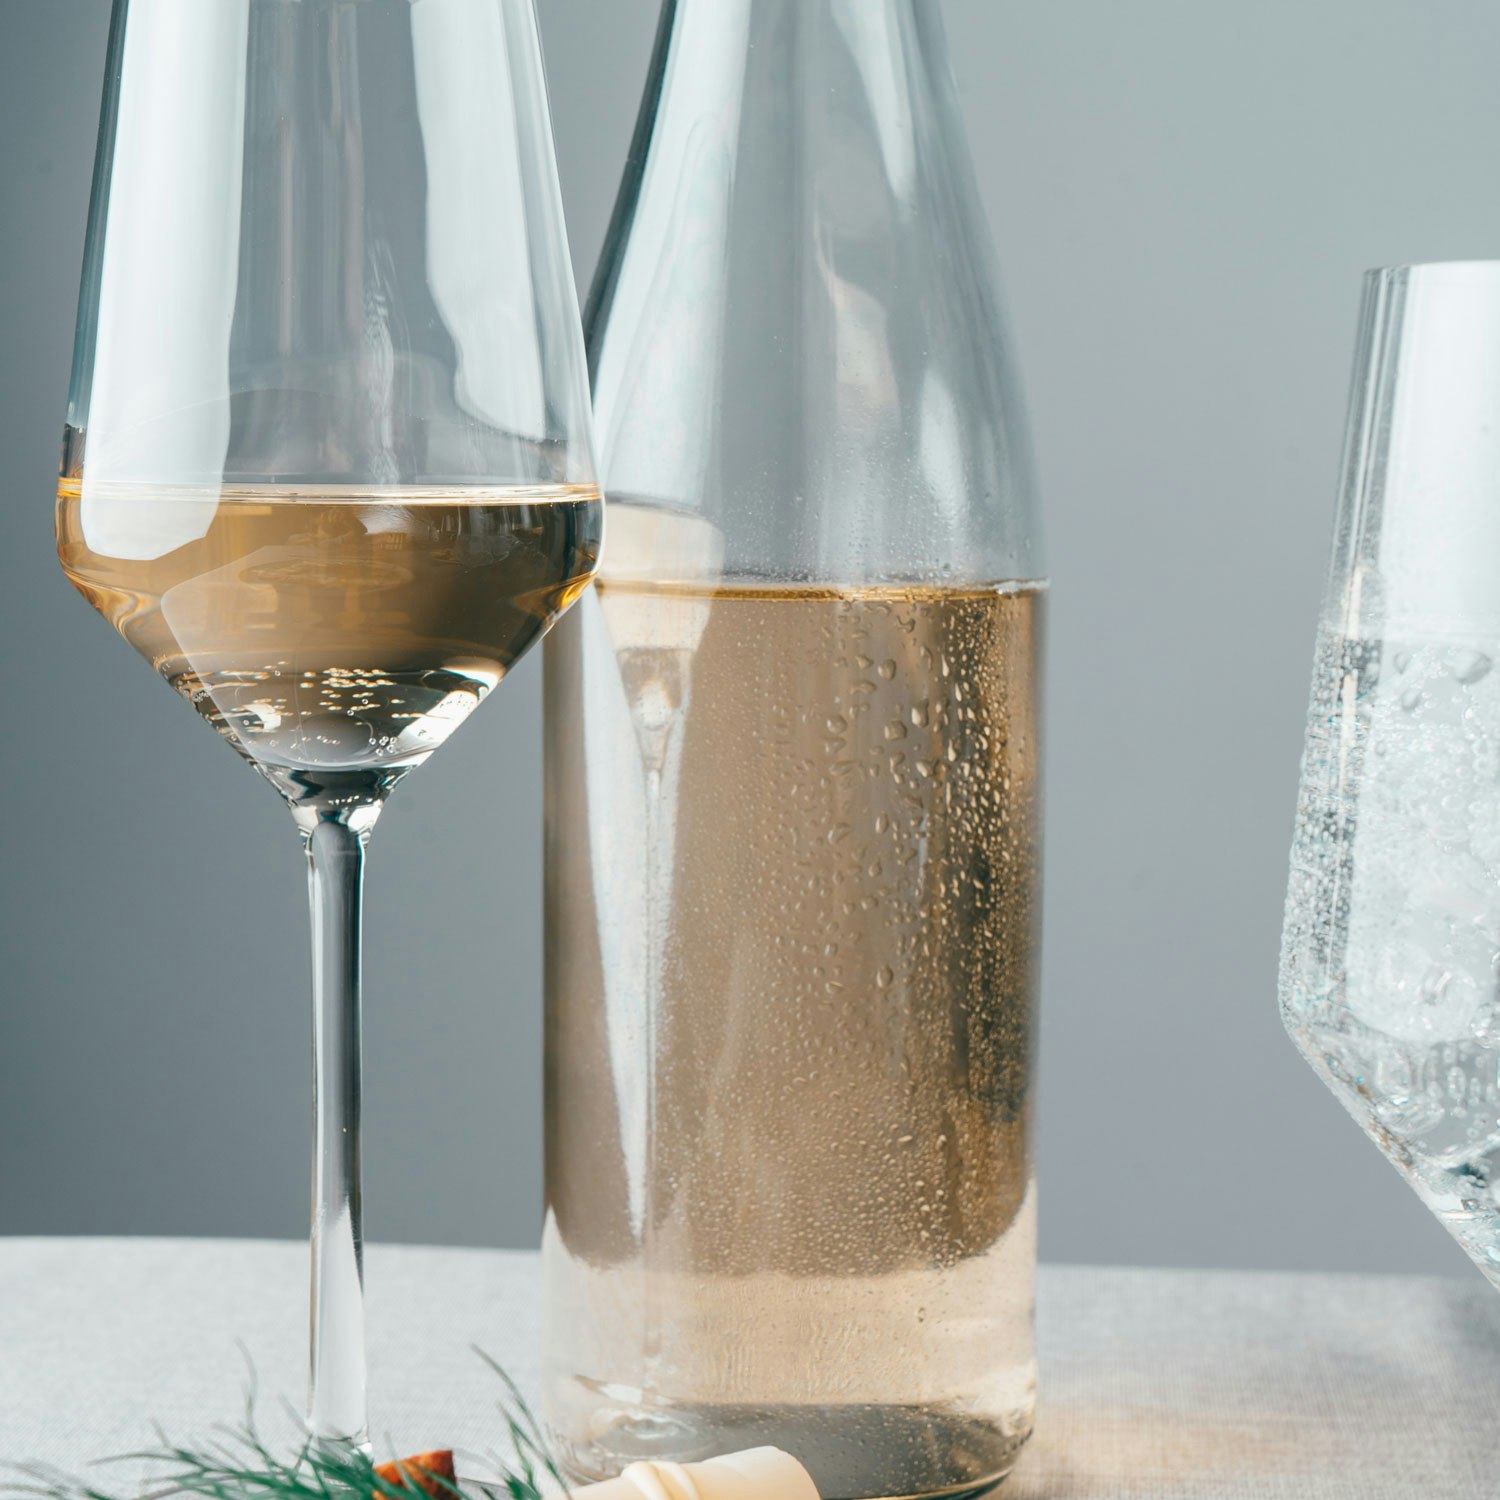 Vervino Allround Wine Glass 68 cl, 2-pack - Zwiesel @ RoyalDesign